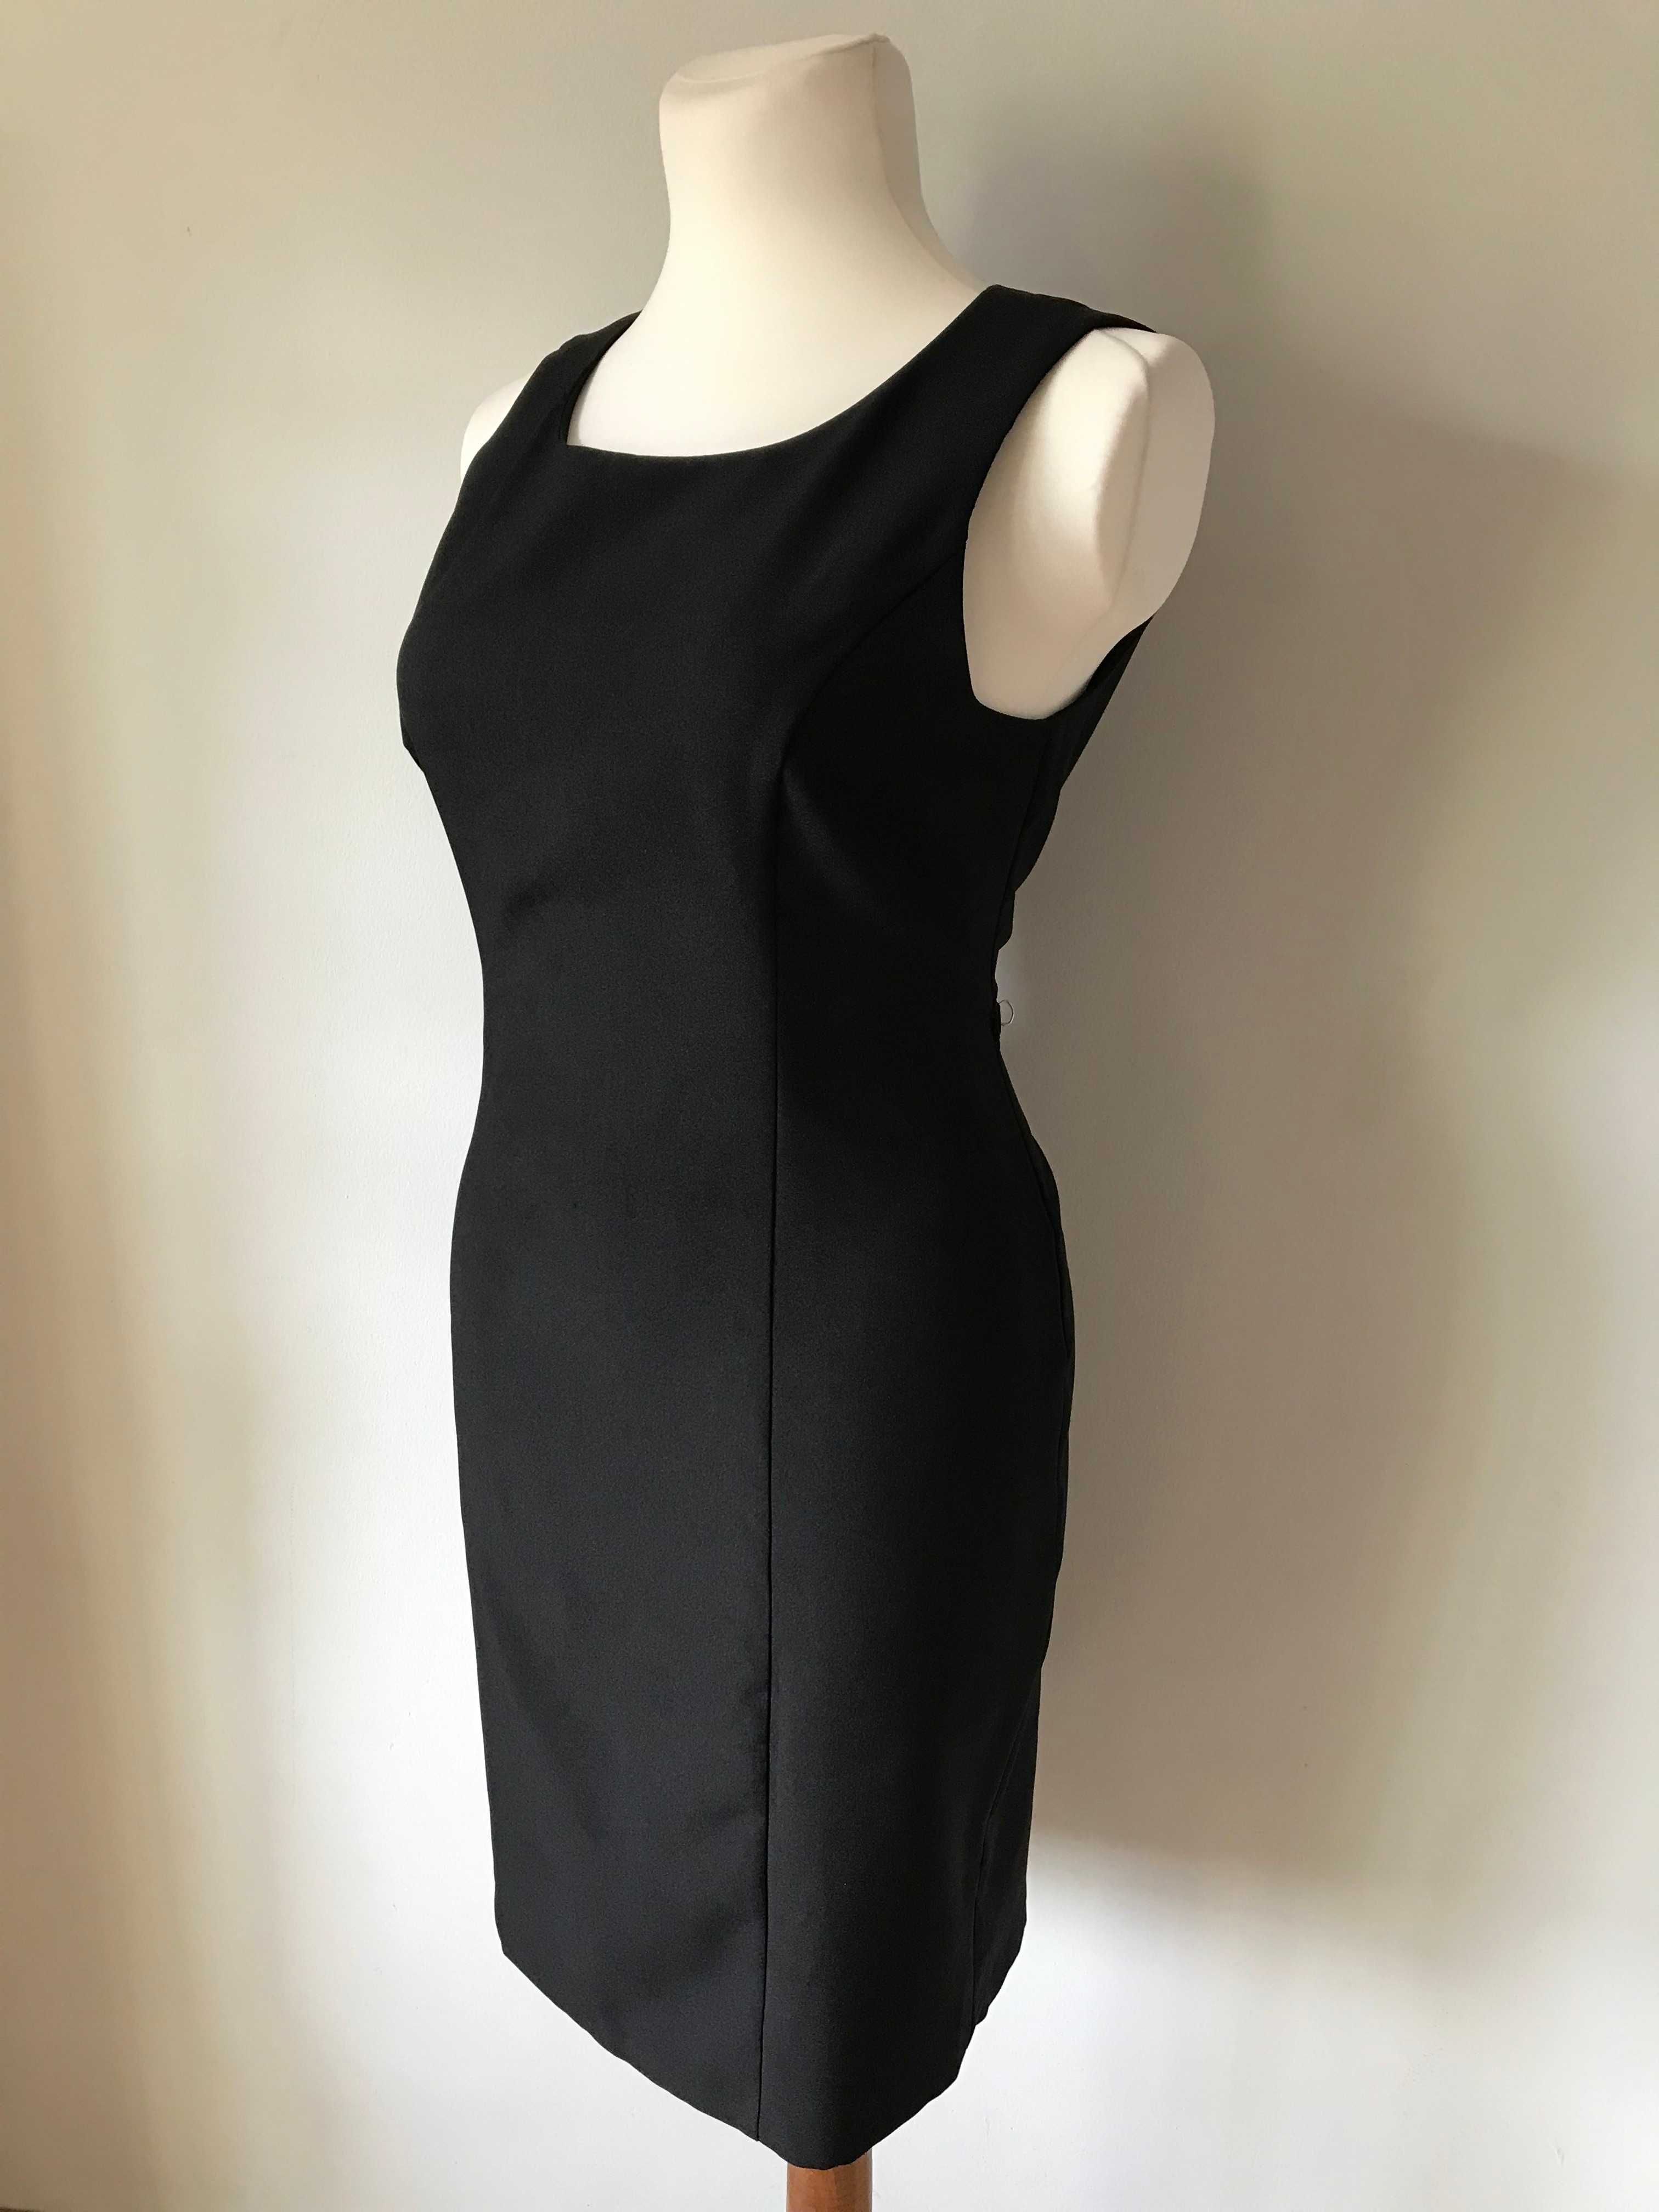 Klasyczna czarna sukienka w stylu retro klepsydra  r. 46 Vintage midi